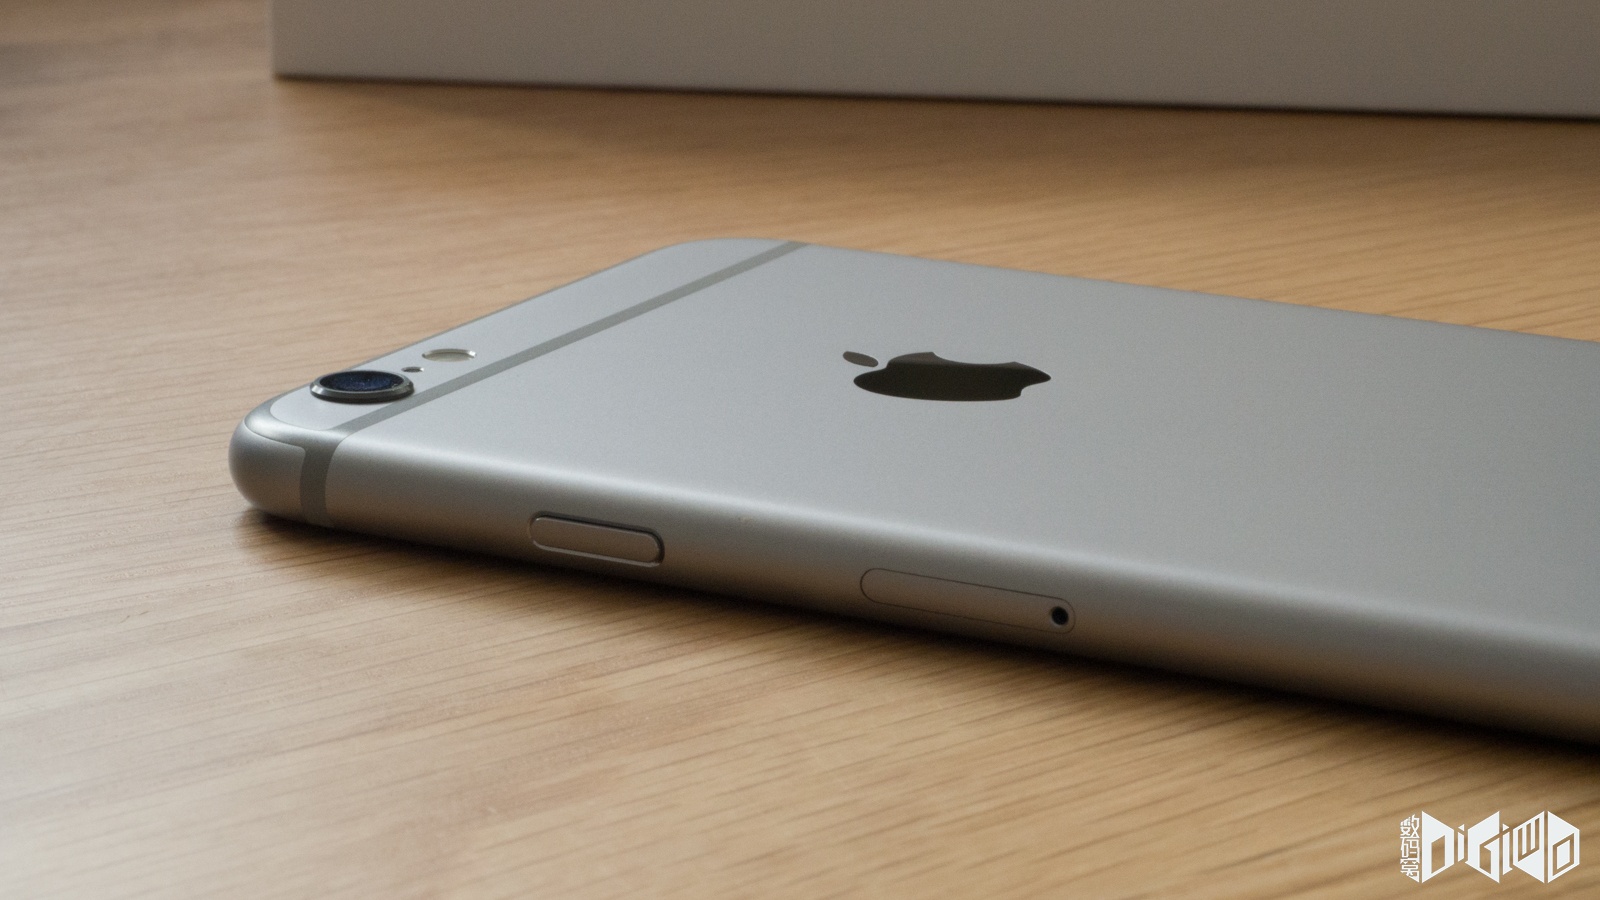 正苹果计算机空间灰色iPhone 6 图库摄影片. 图片 包括有 显示, 设备, 计算机, 流动性, 家庭 - 44828437